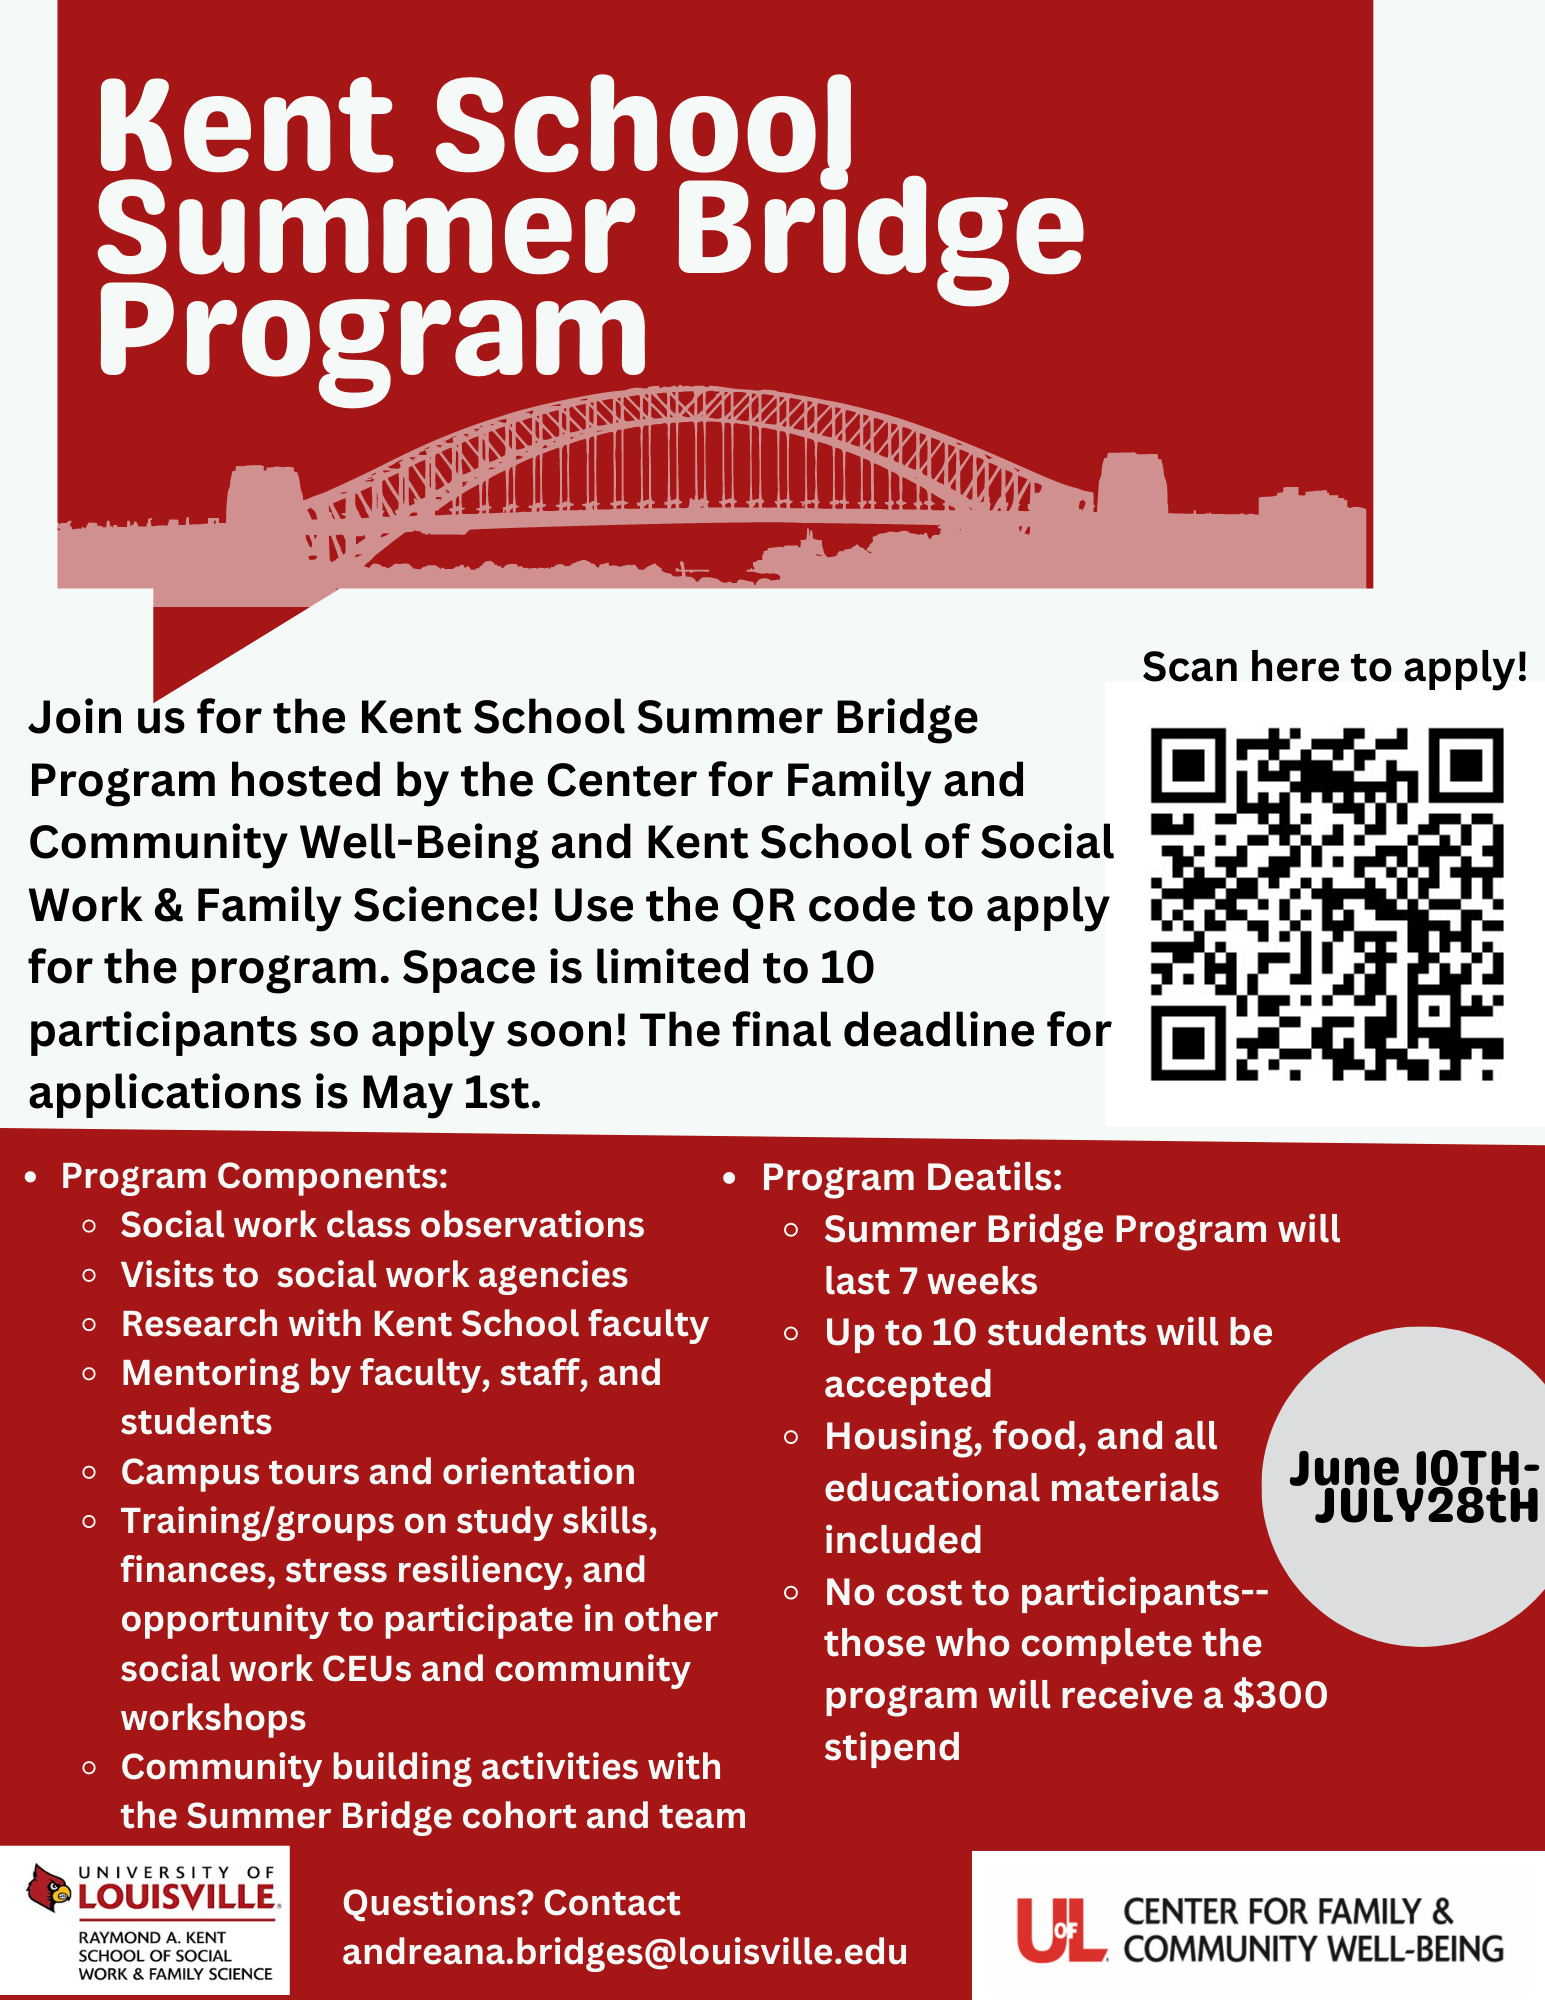 Kent School Summer Bridge program flyer